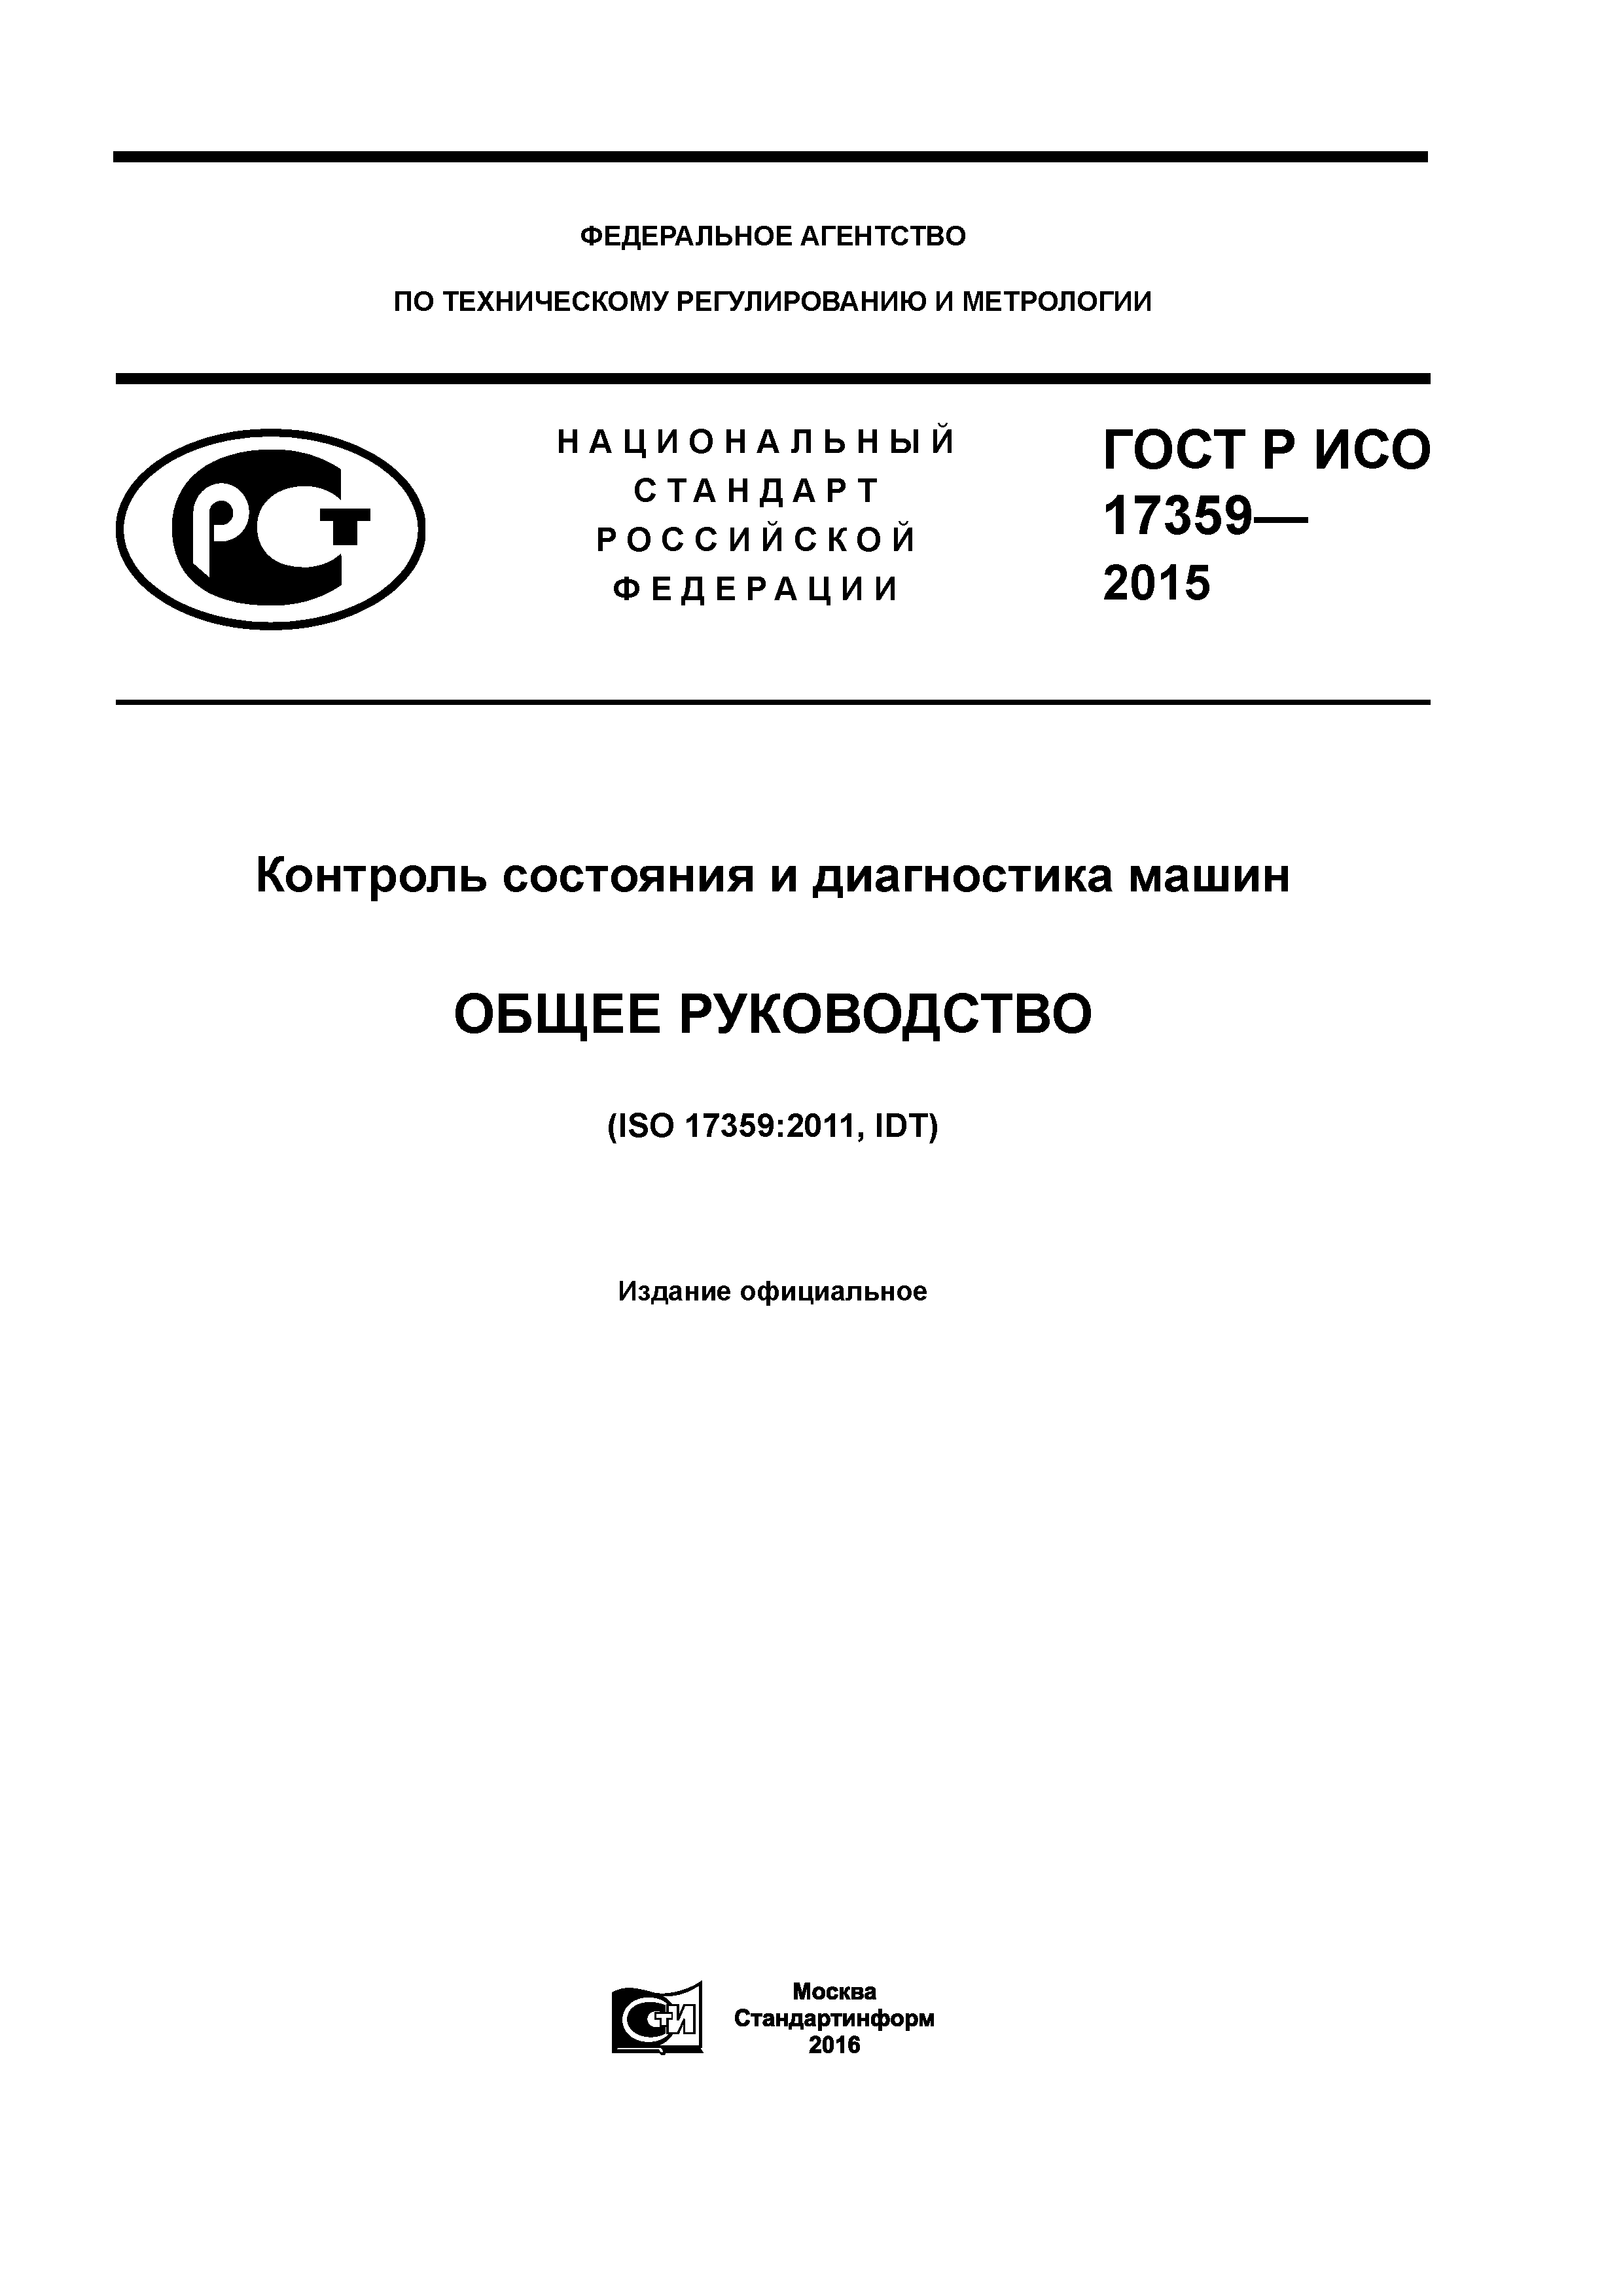 ГОСТ Р ИСО 17359-2015